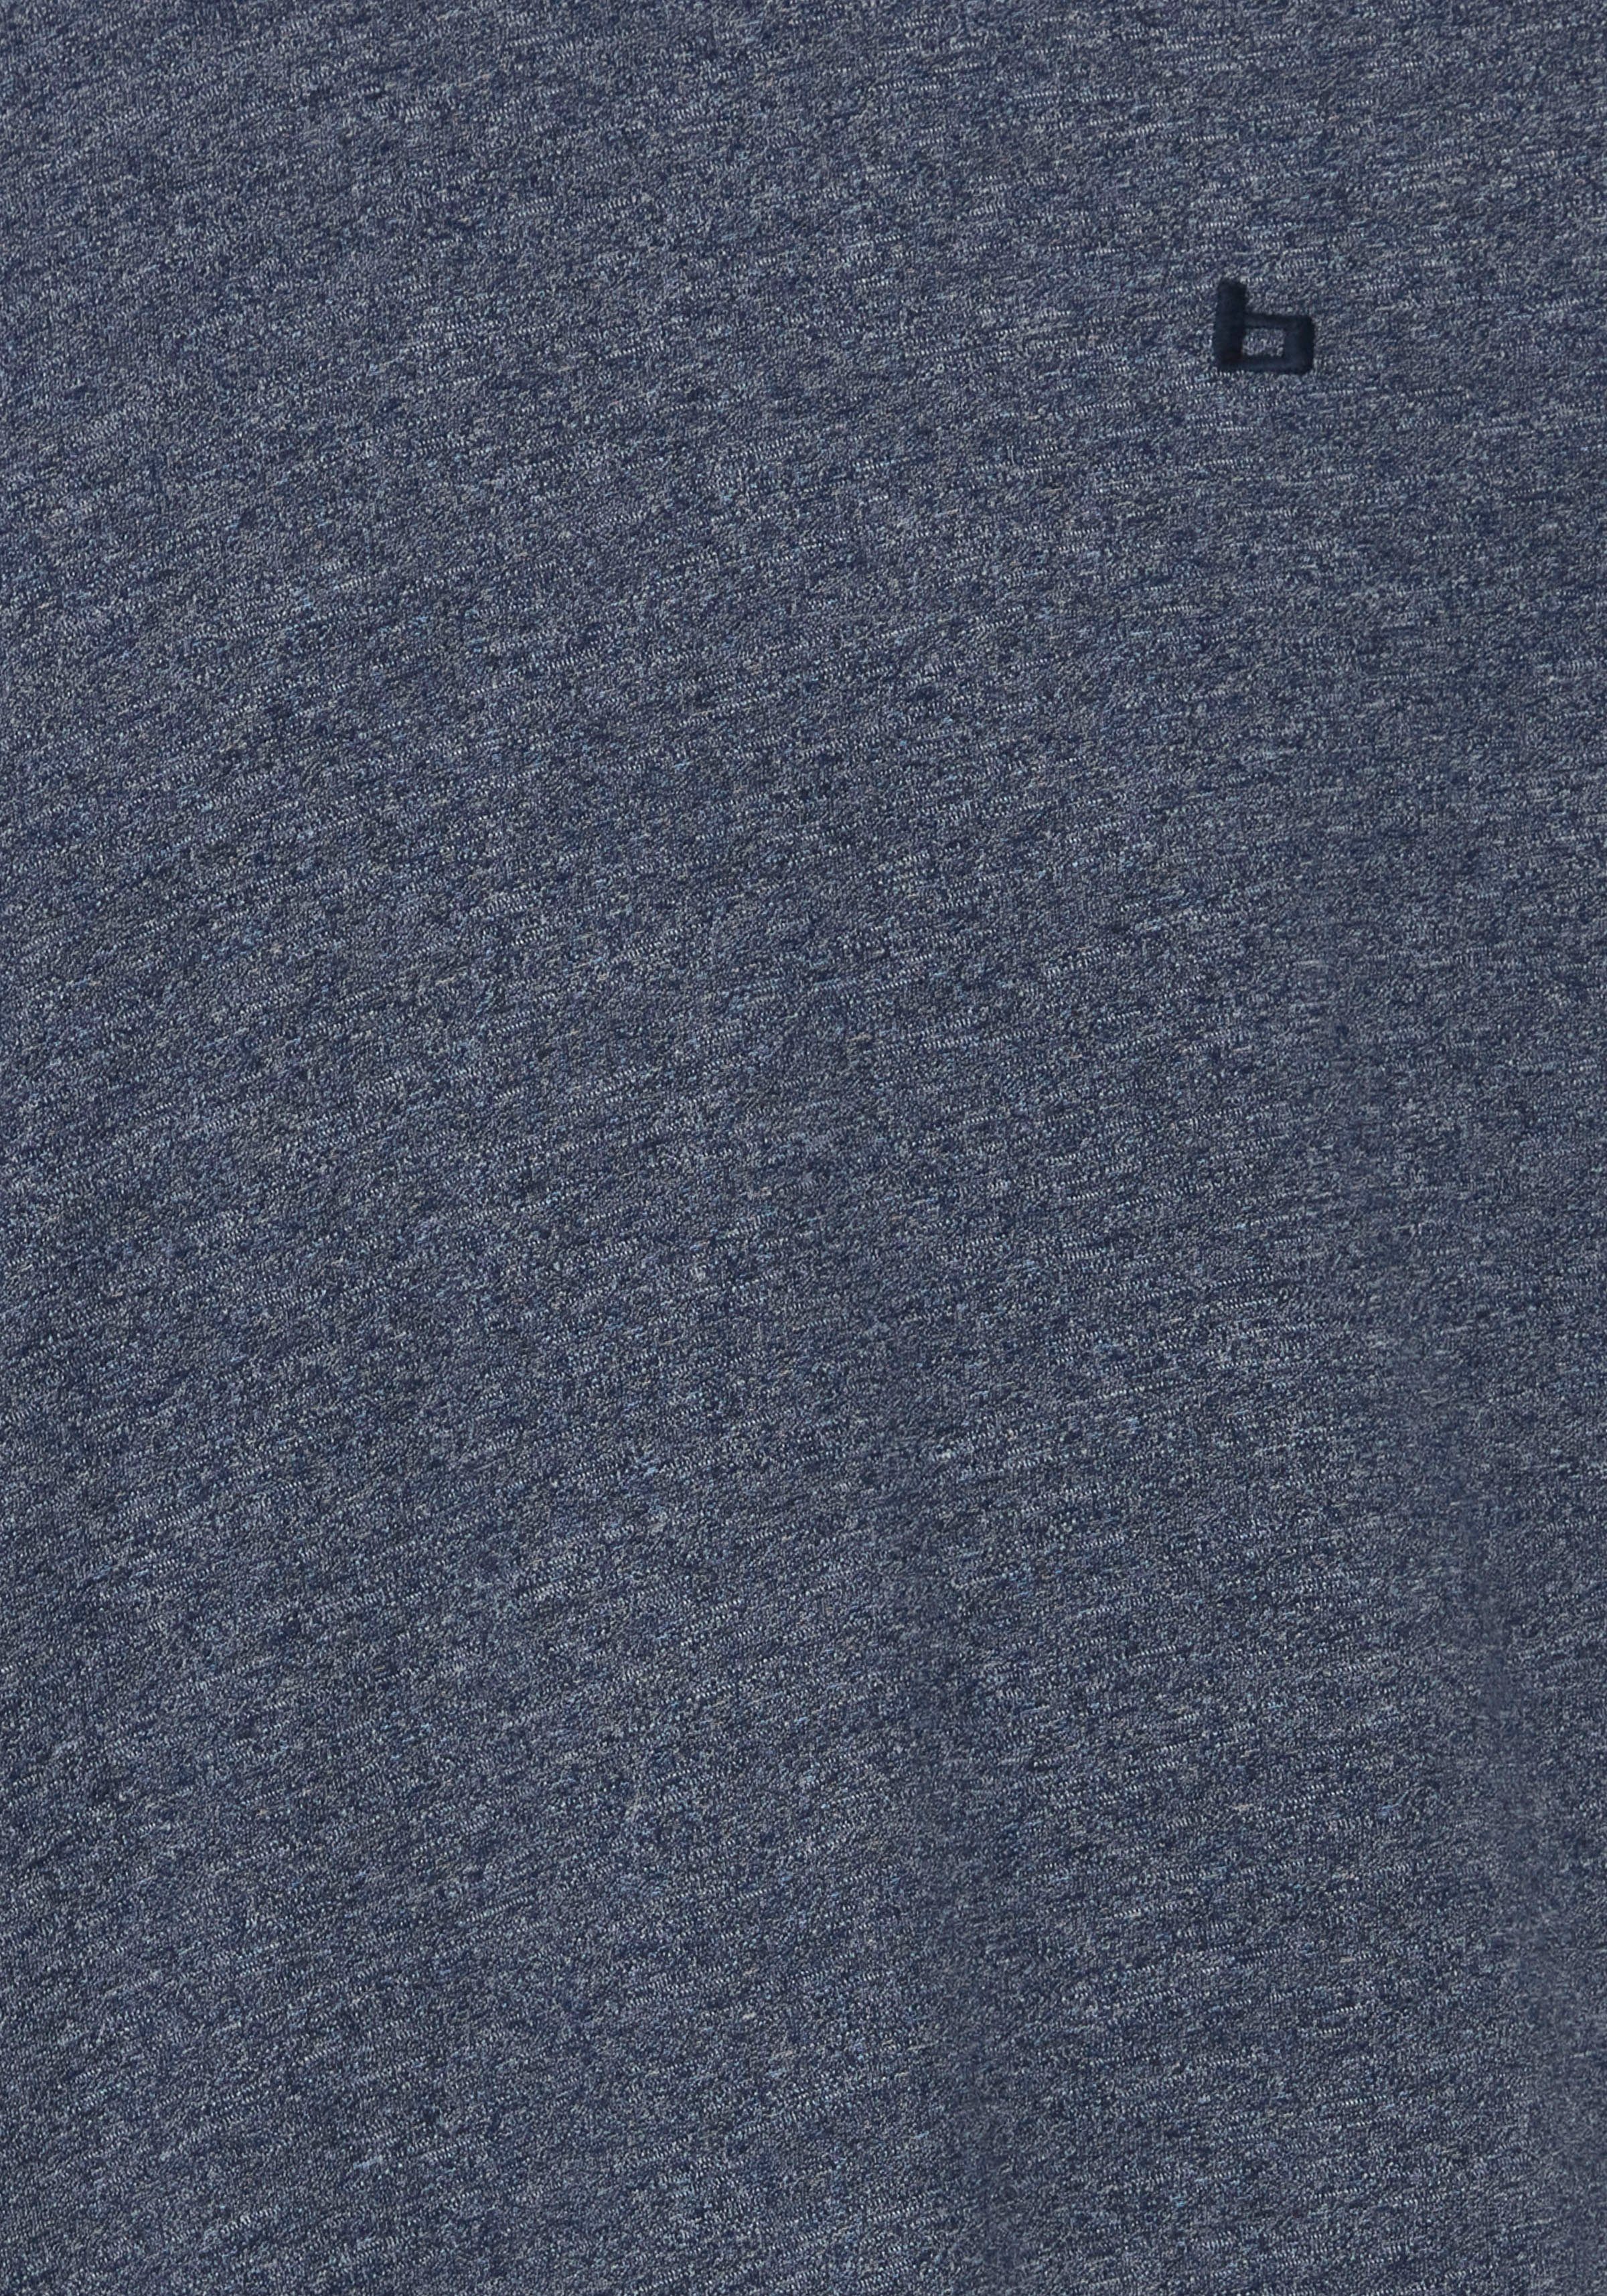 Produktname Kurzarmshirt BL20715298 BL-T-shirt Blend blue